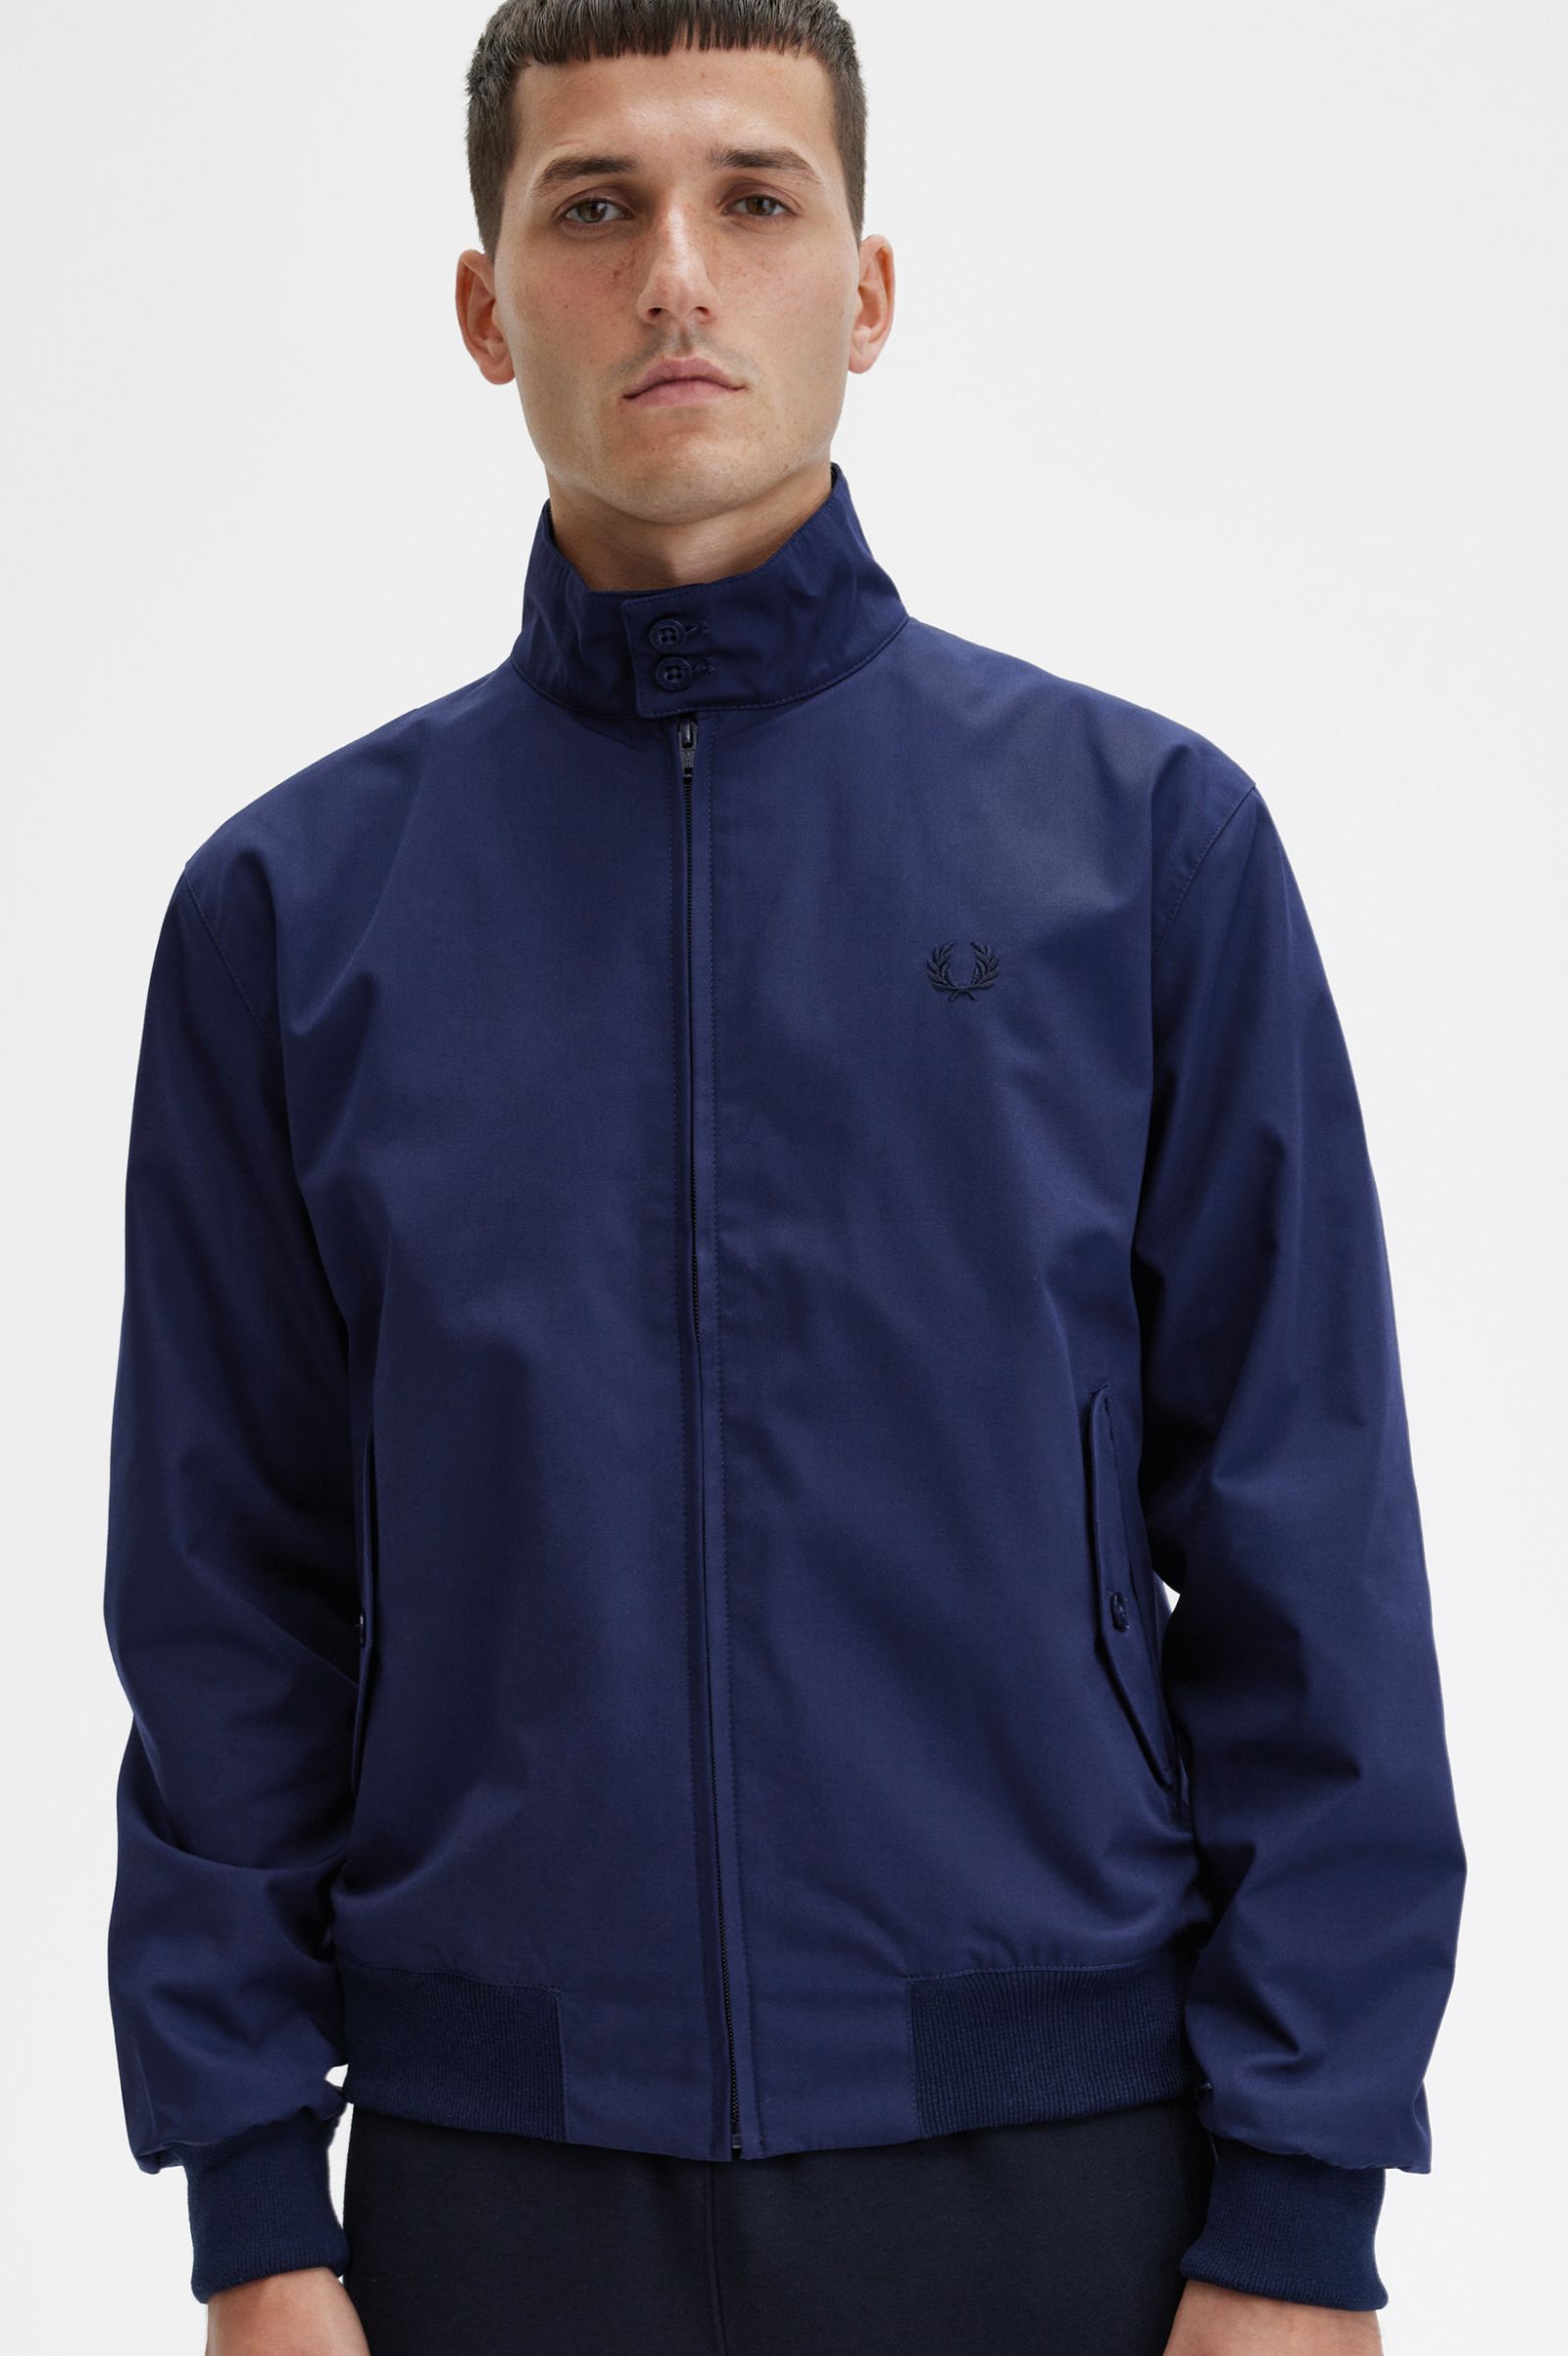 Harrington Jacket - Navy | Made In England | Men's Jackets, Shirts